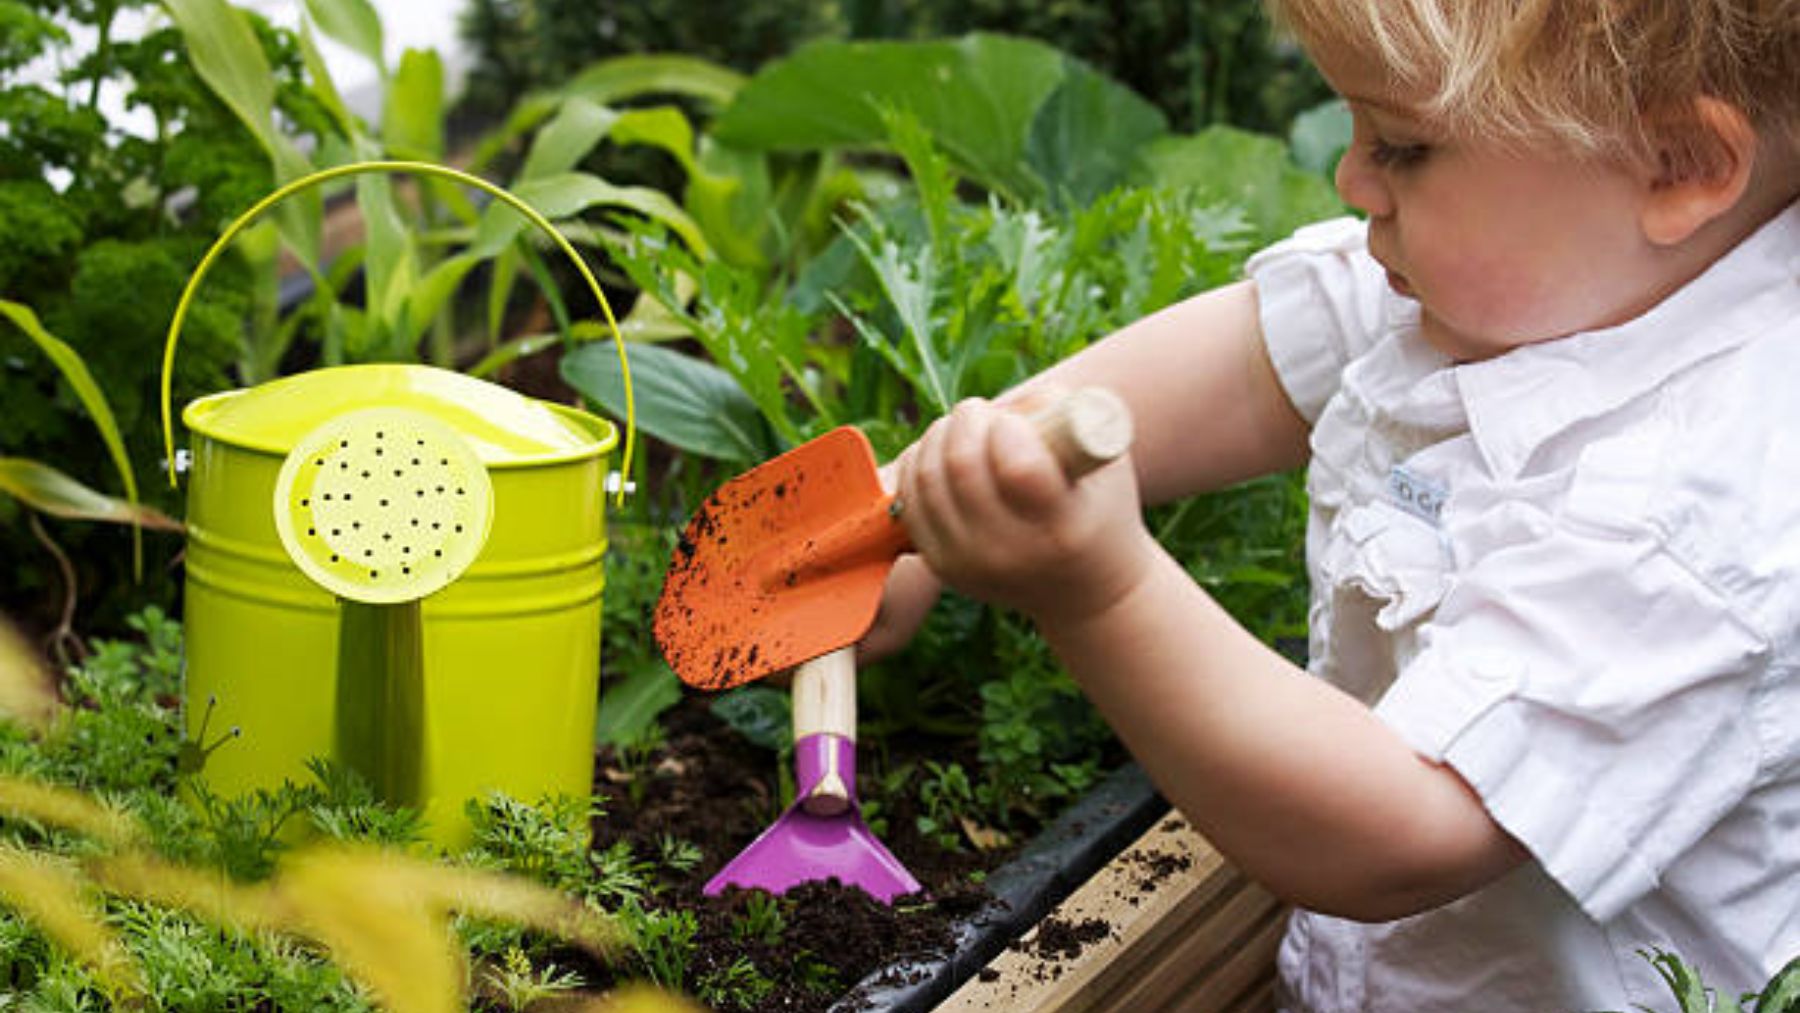 Descubre de qué modo puedes involucrar a los niños en la jardinería